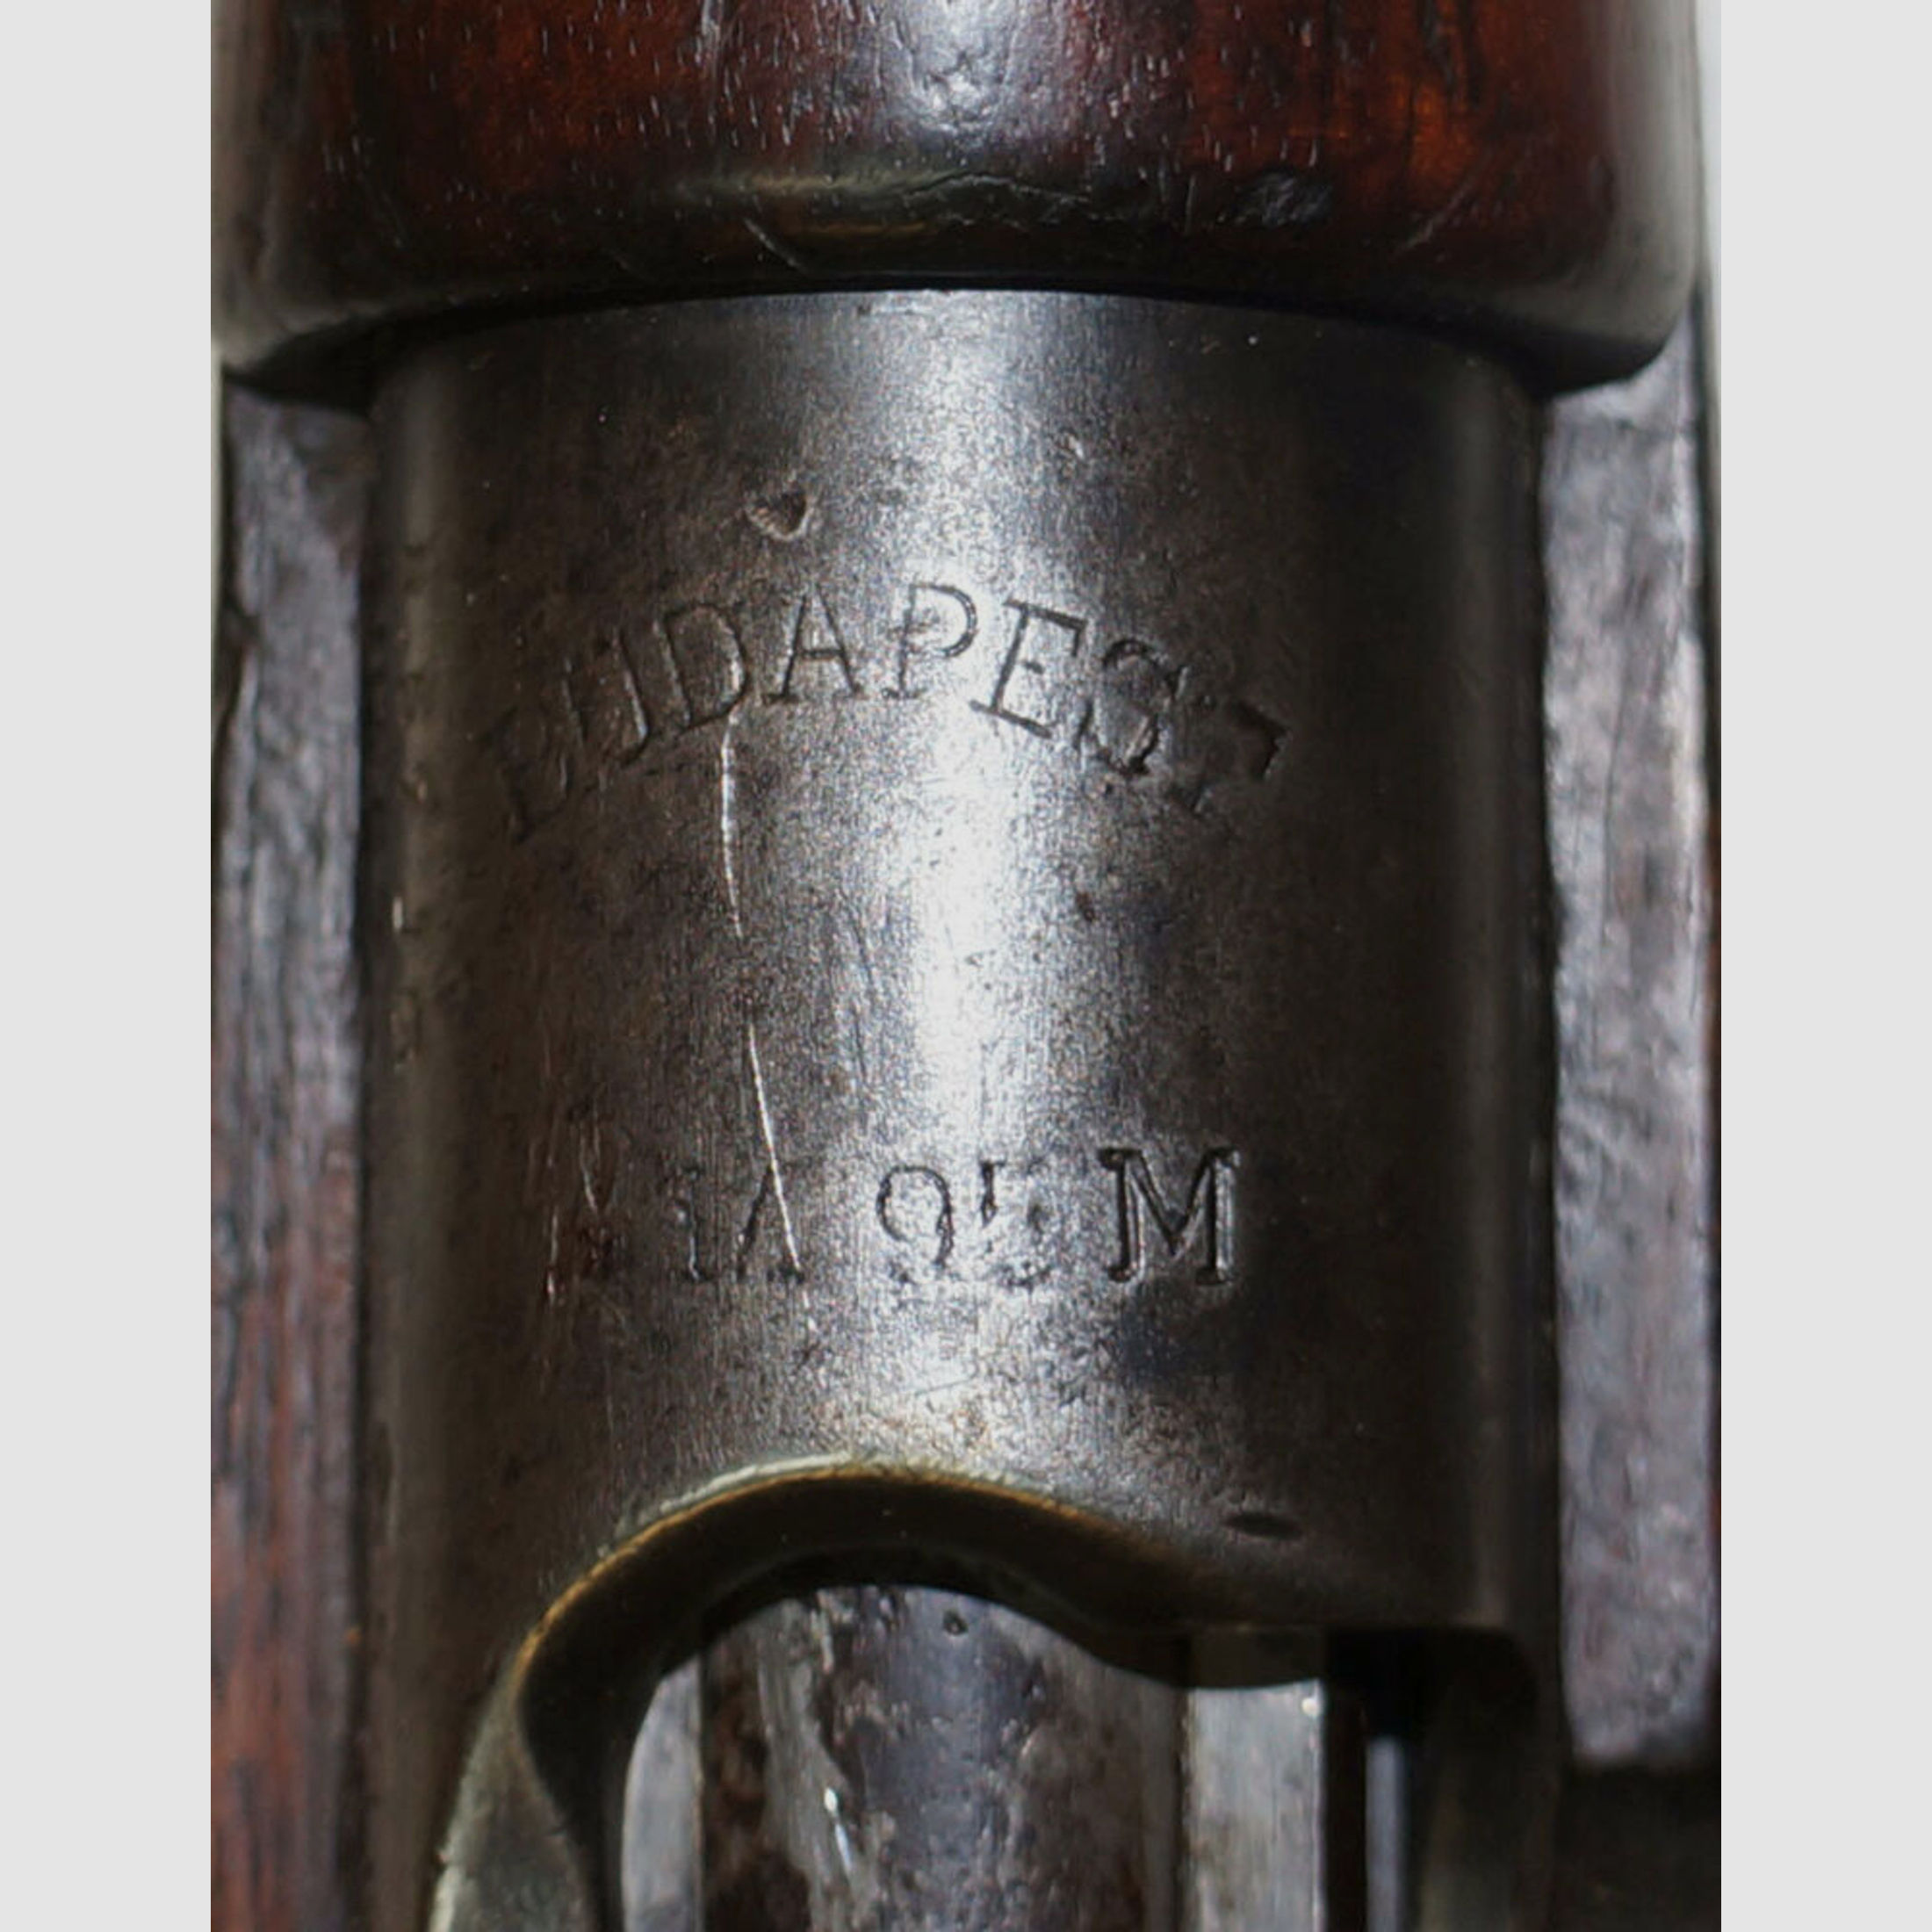 Steyr	 Repetierbüchse Steyr M95/24 Fertigung Budapest, 8x57IS, WK1, WK2, Kaiserreich Österreich-Ungarn